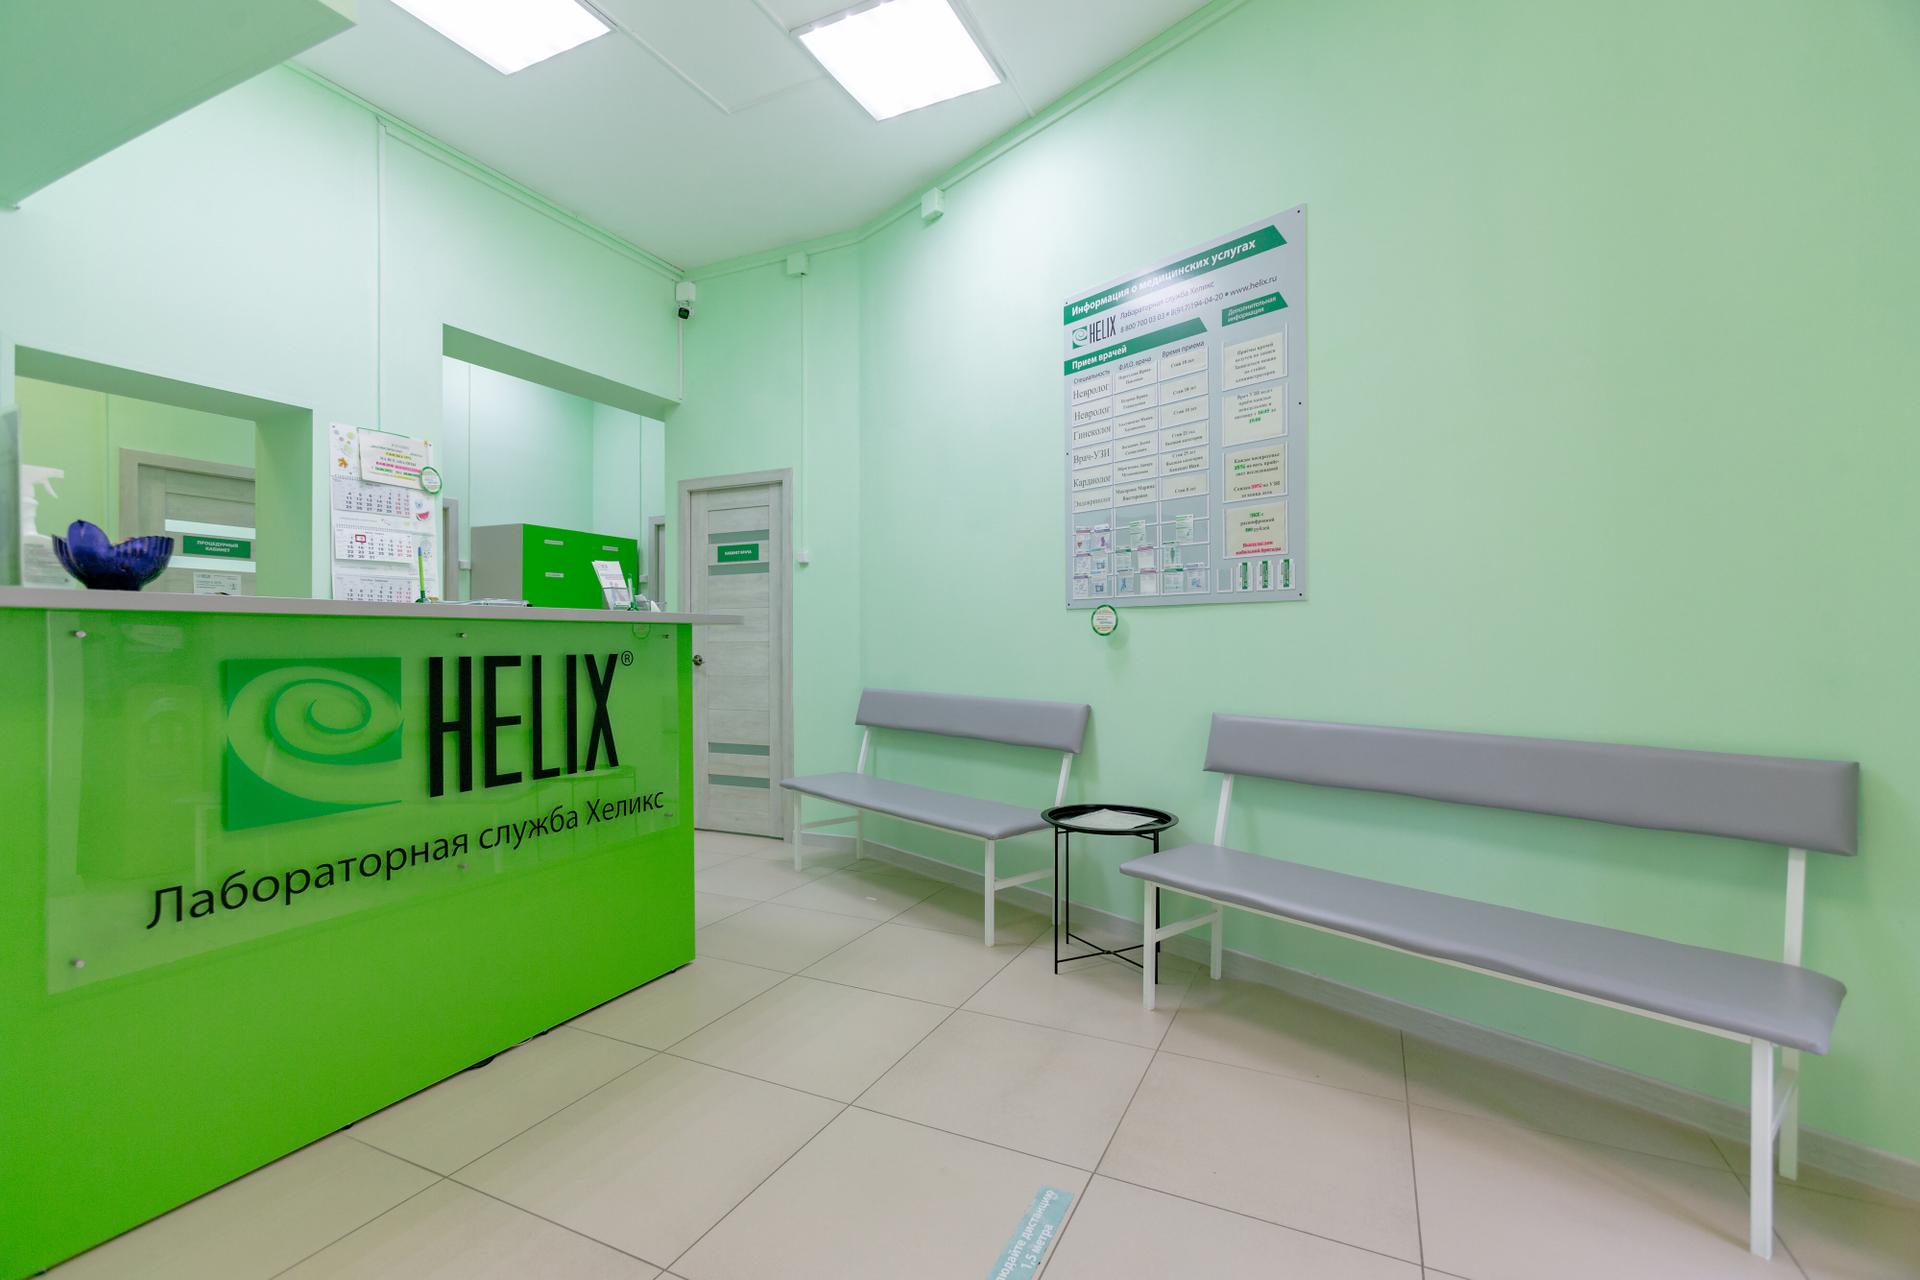 Сайт лаборатории хеликс москва. Helix лаборатория. Хеликс Томск. Хеликс Тверь.